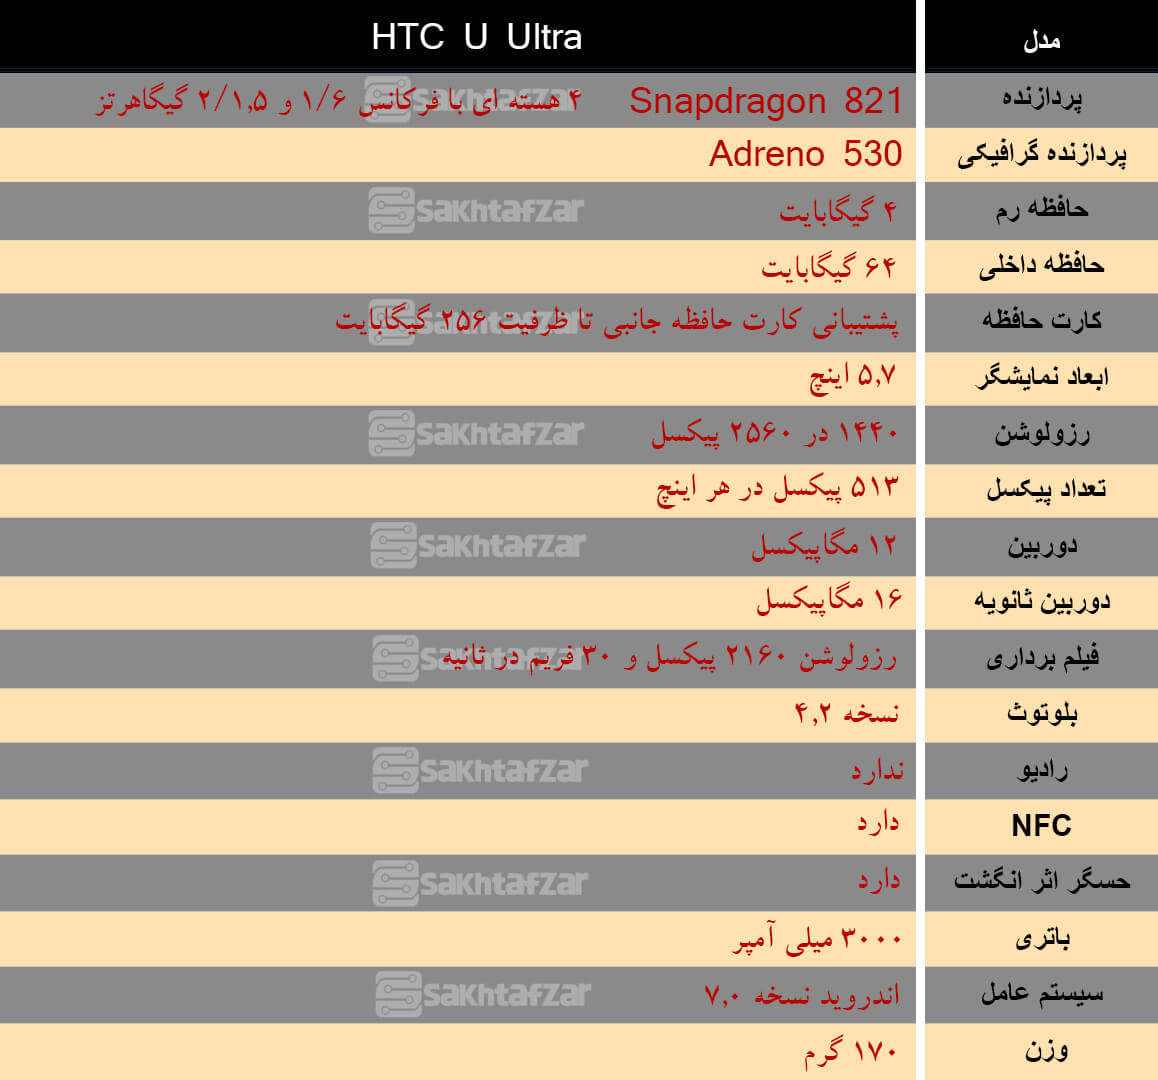 اخبار دیجیتال,خبرهای دیجیتال,موبایل و تبلت,گوشی هوشمند HTC U ULTRA